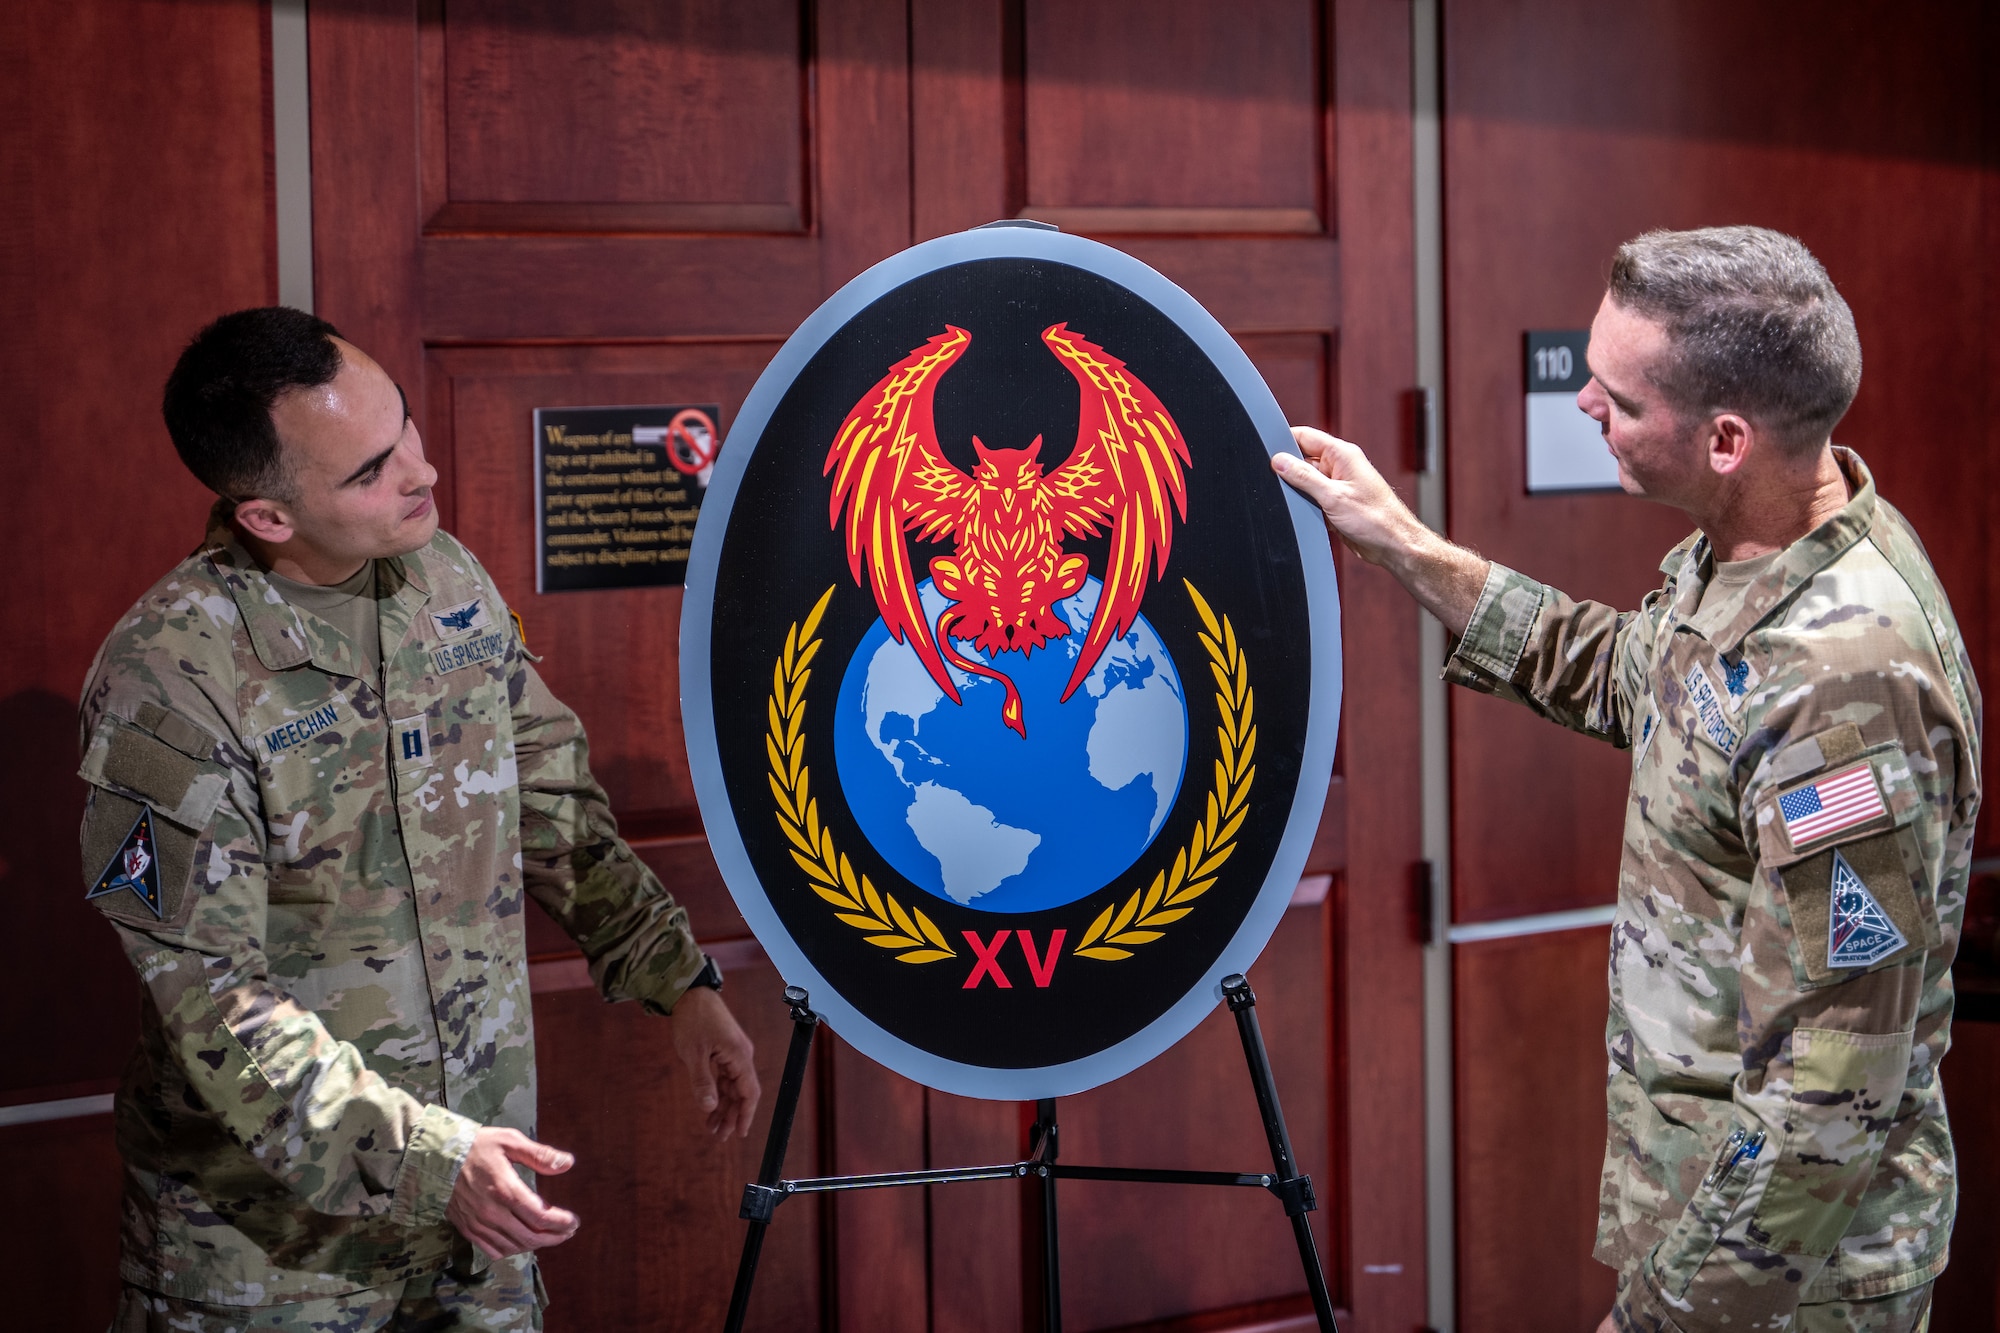 Two men in uniform unveil an emblem